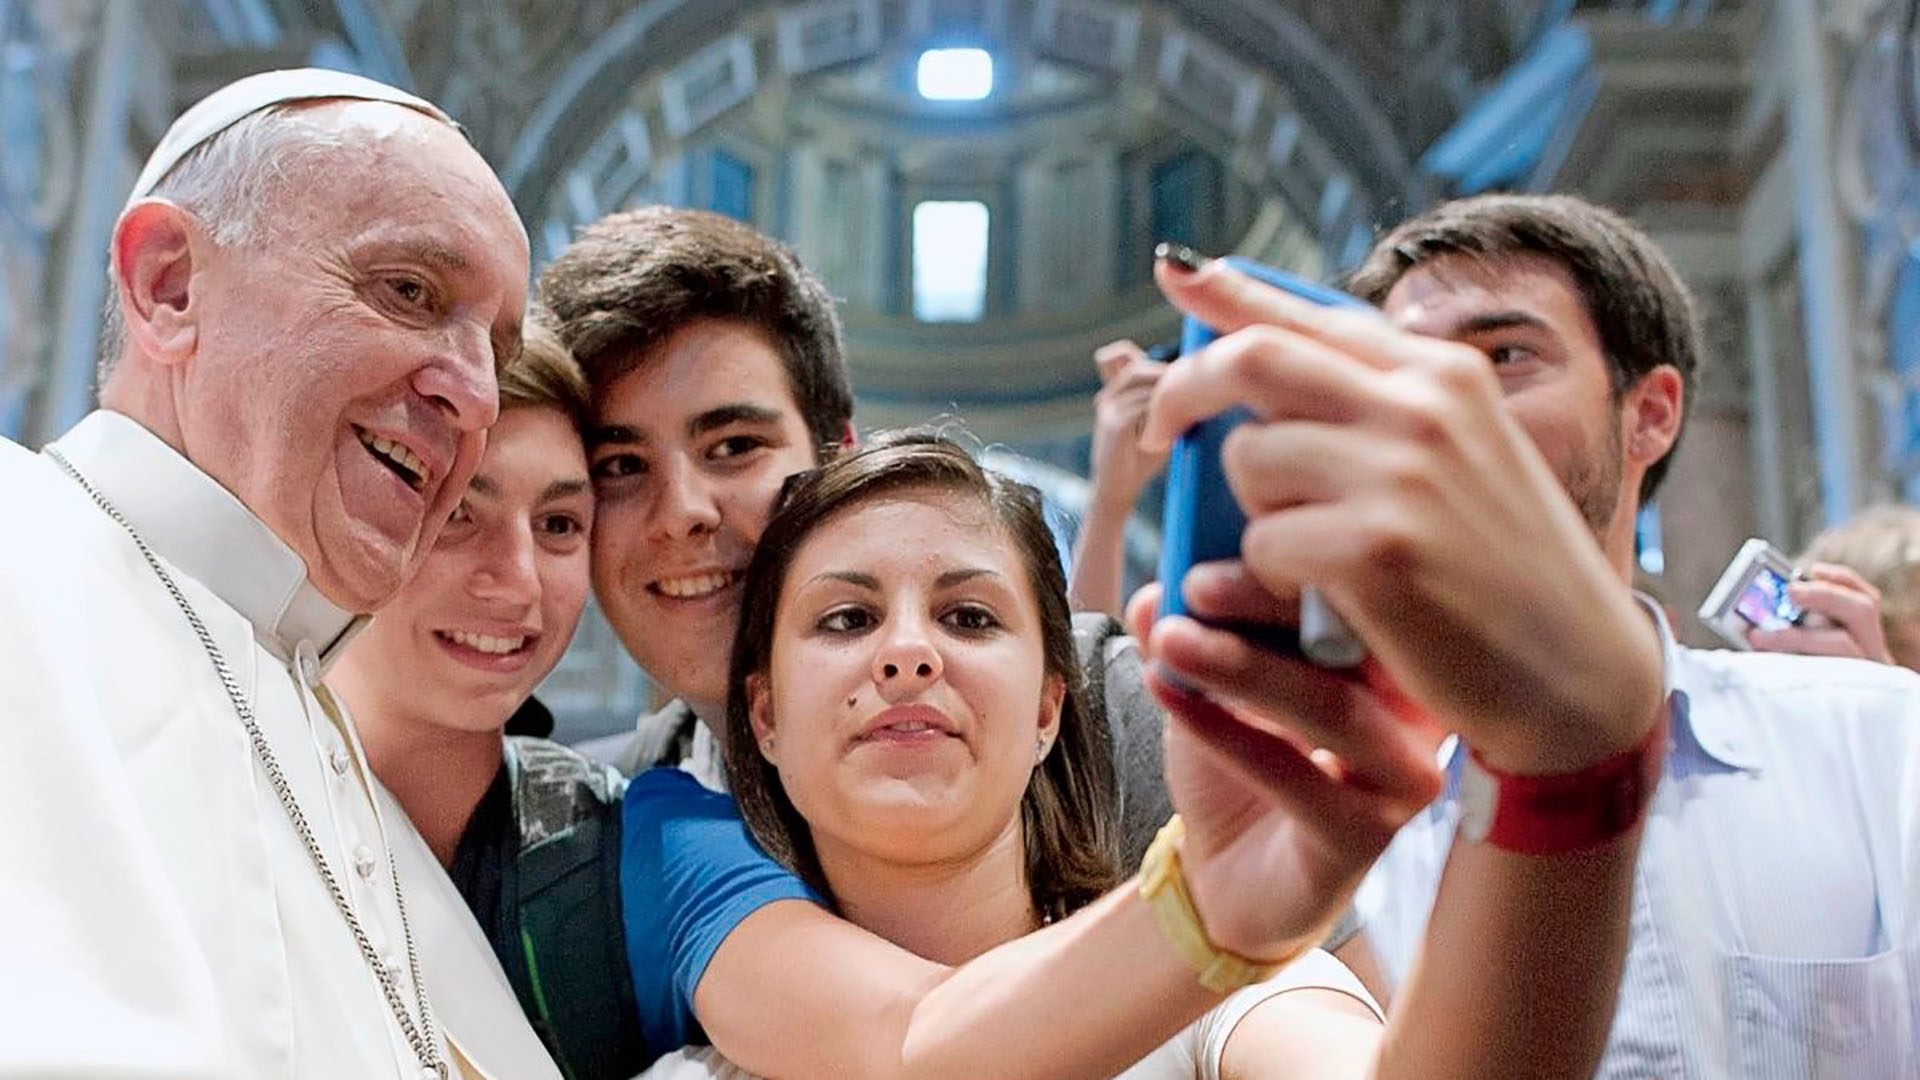 Le pape François et son célèbre selfie avec des jeunes | DR